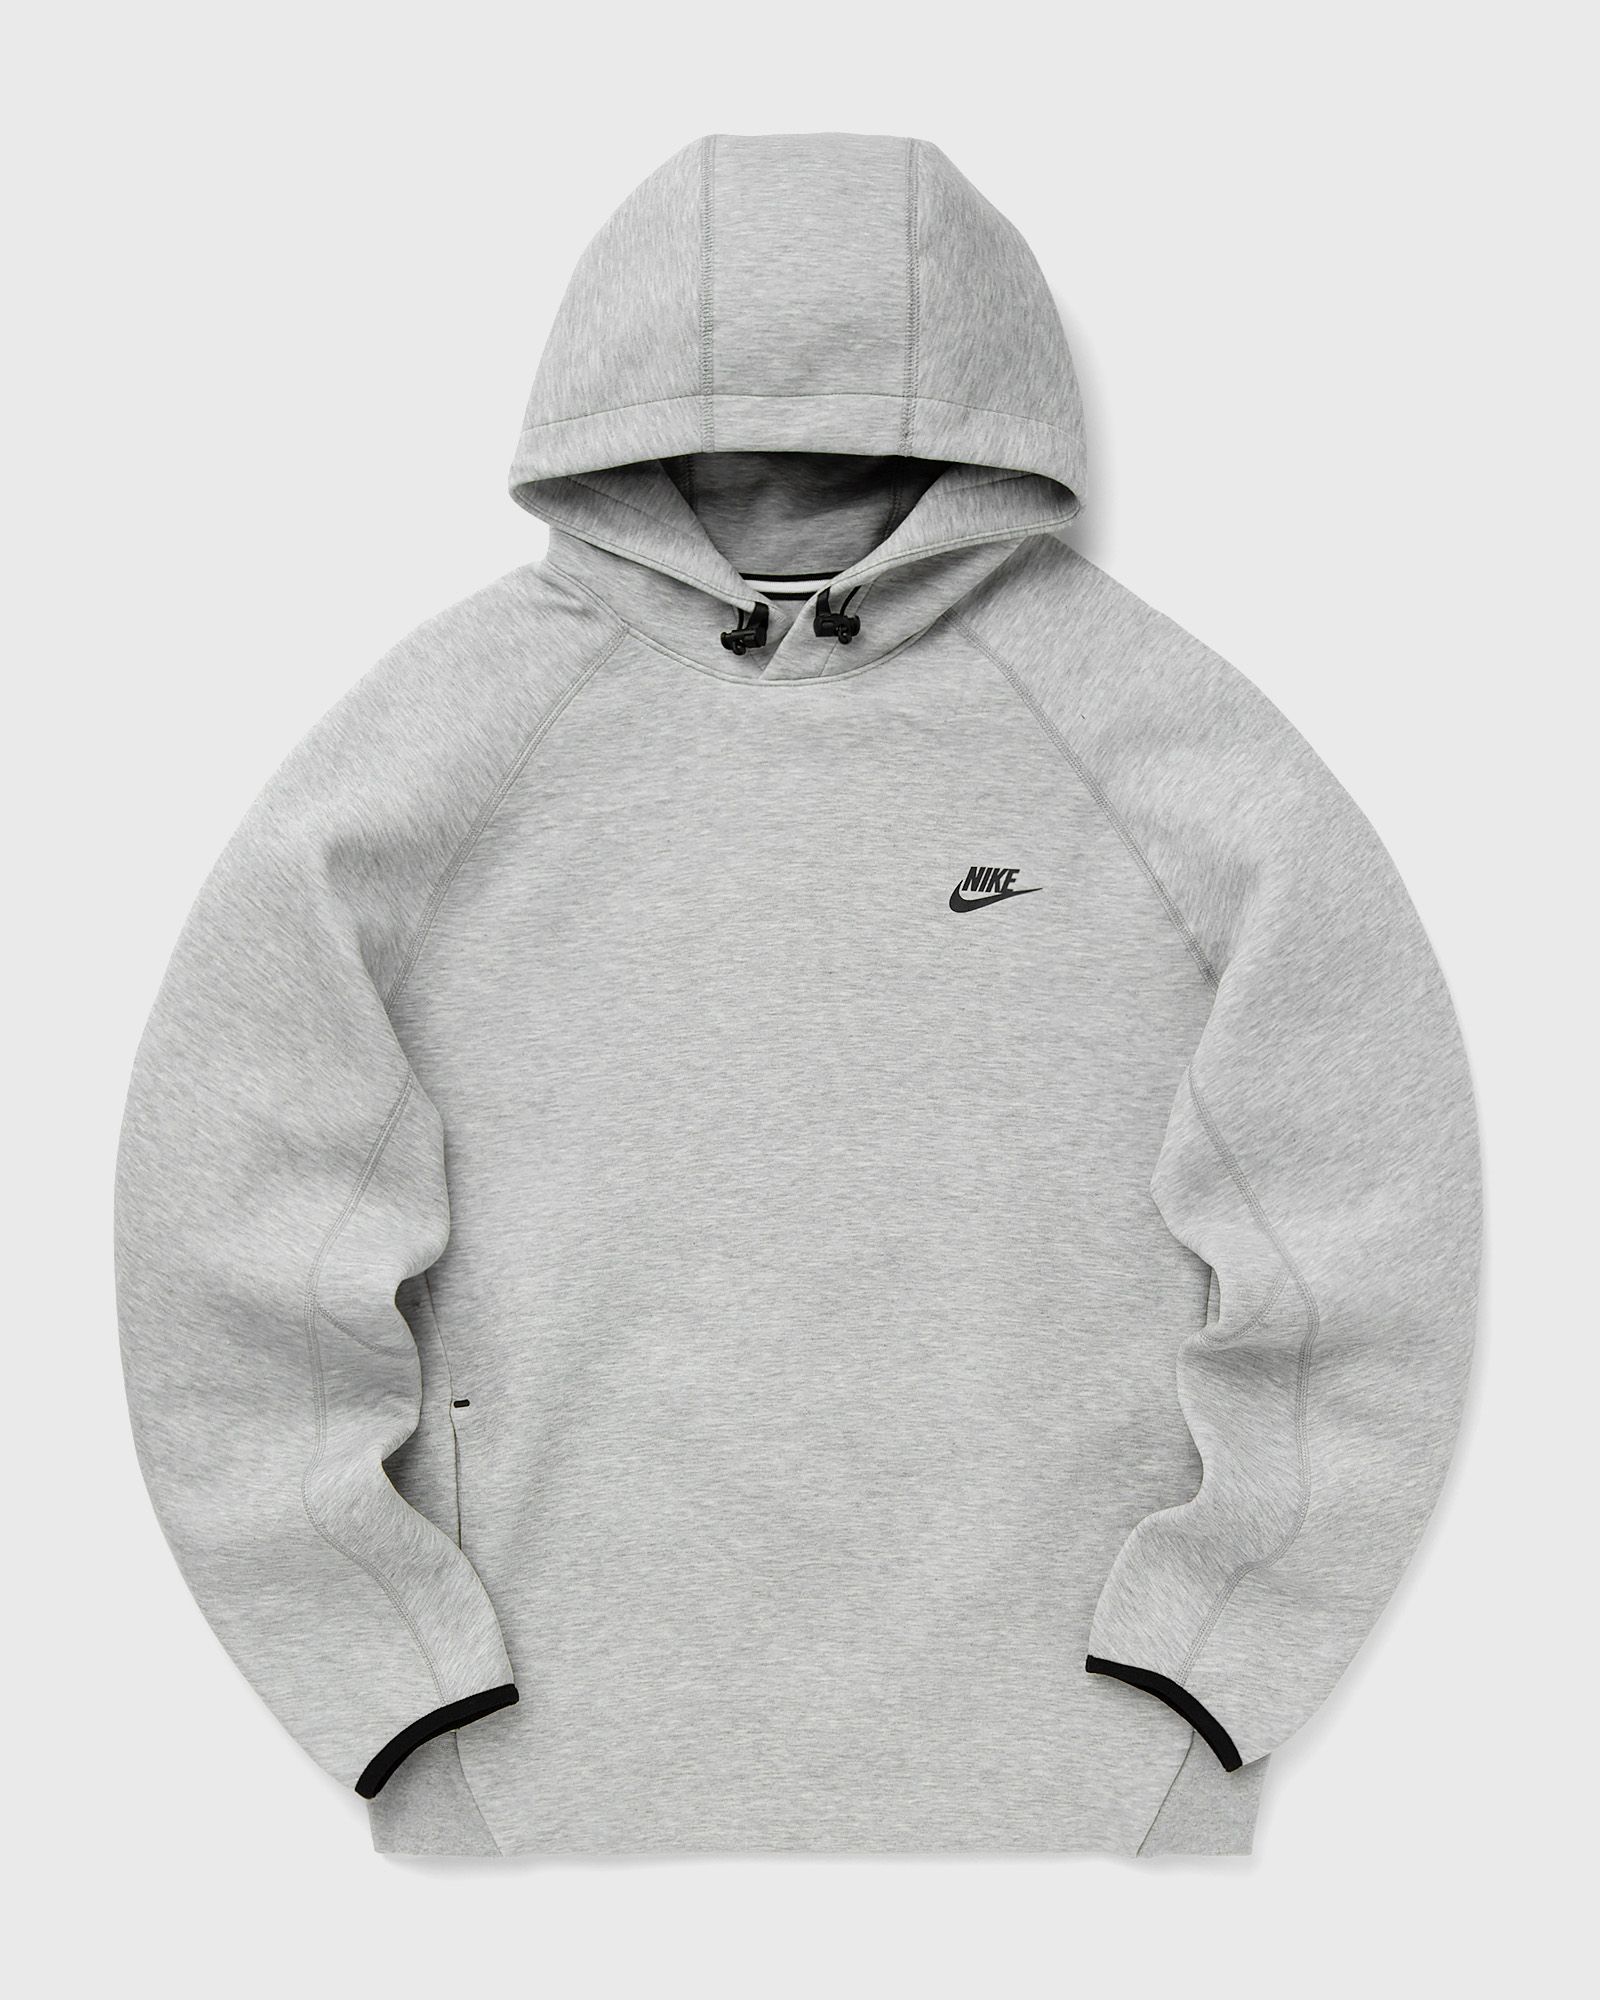 Nike - sportswear tech fleece pullover hoodie men hoodies grey in größe:xxl